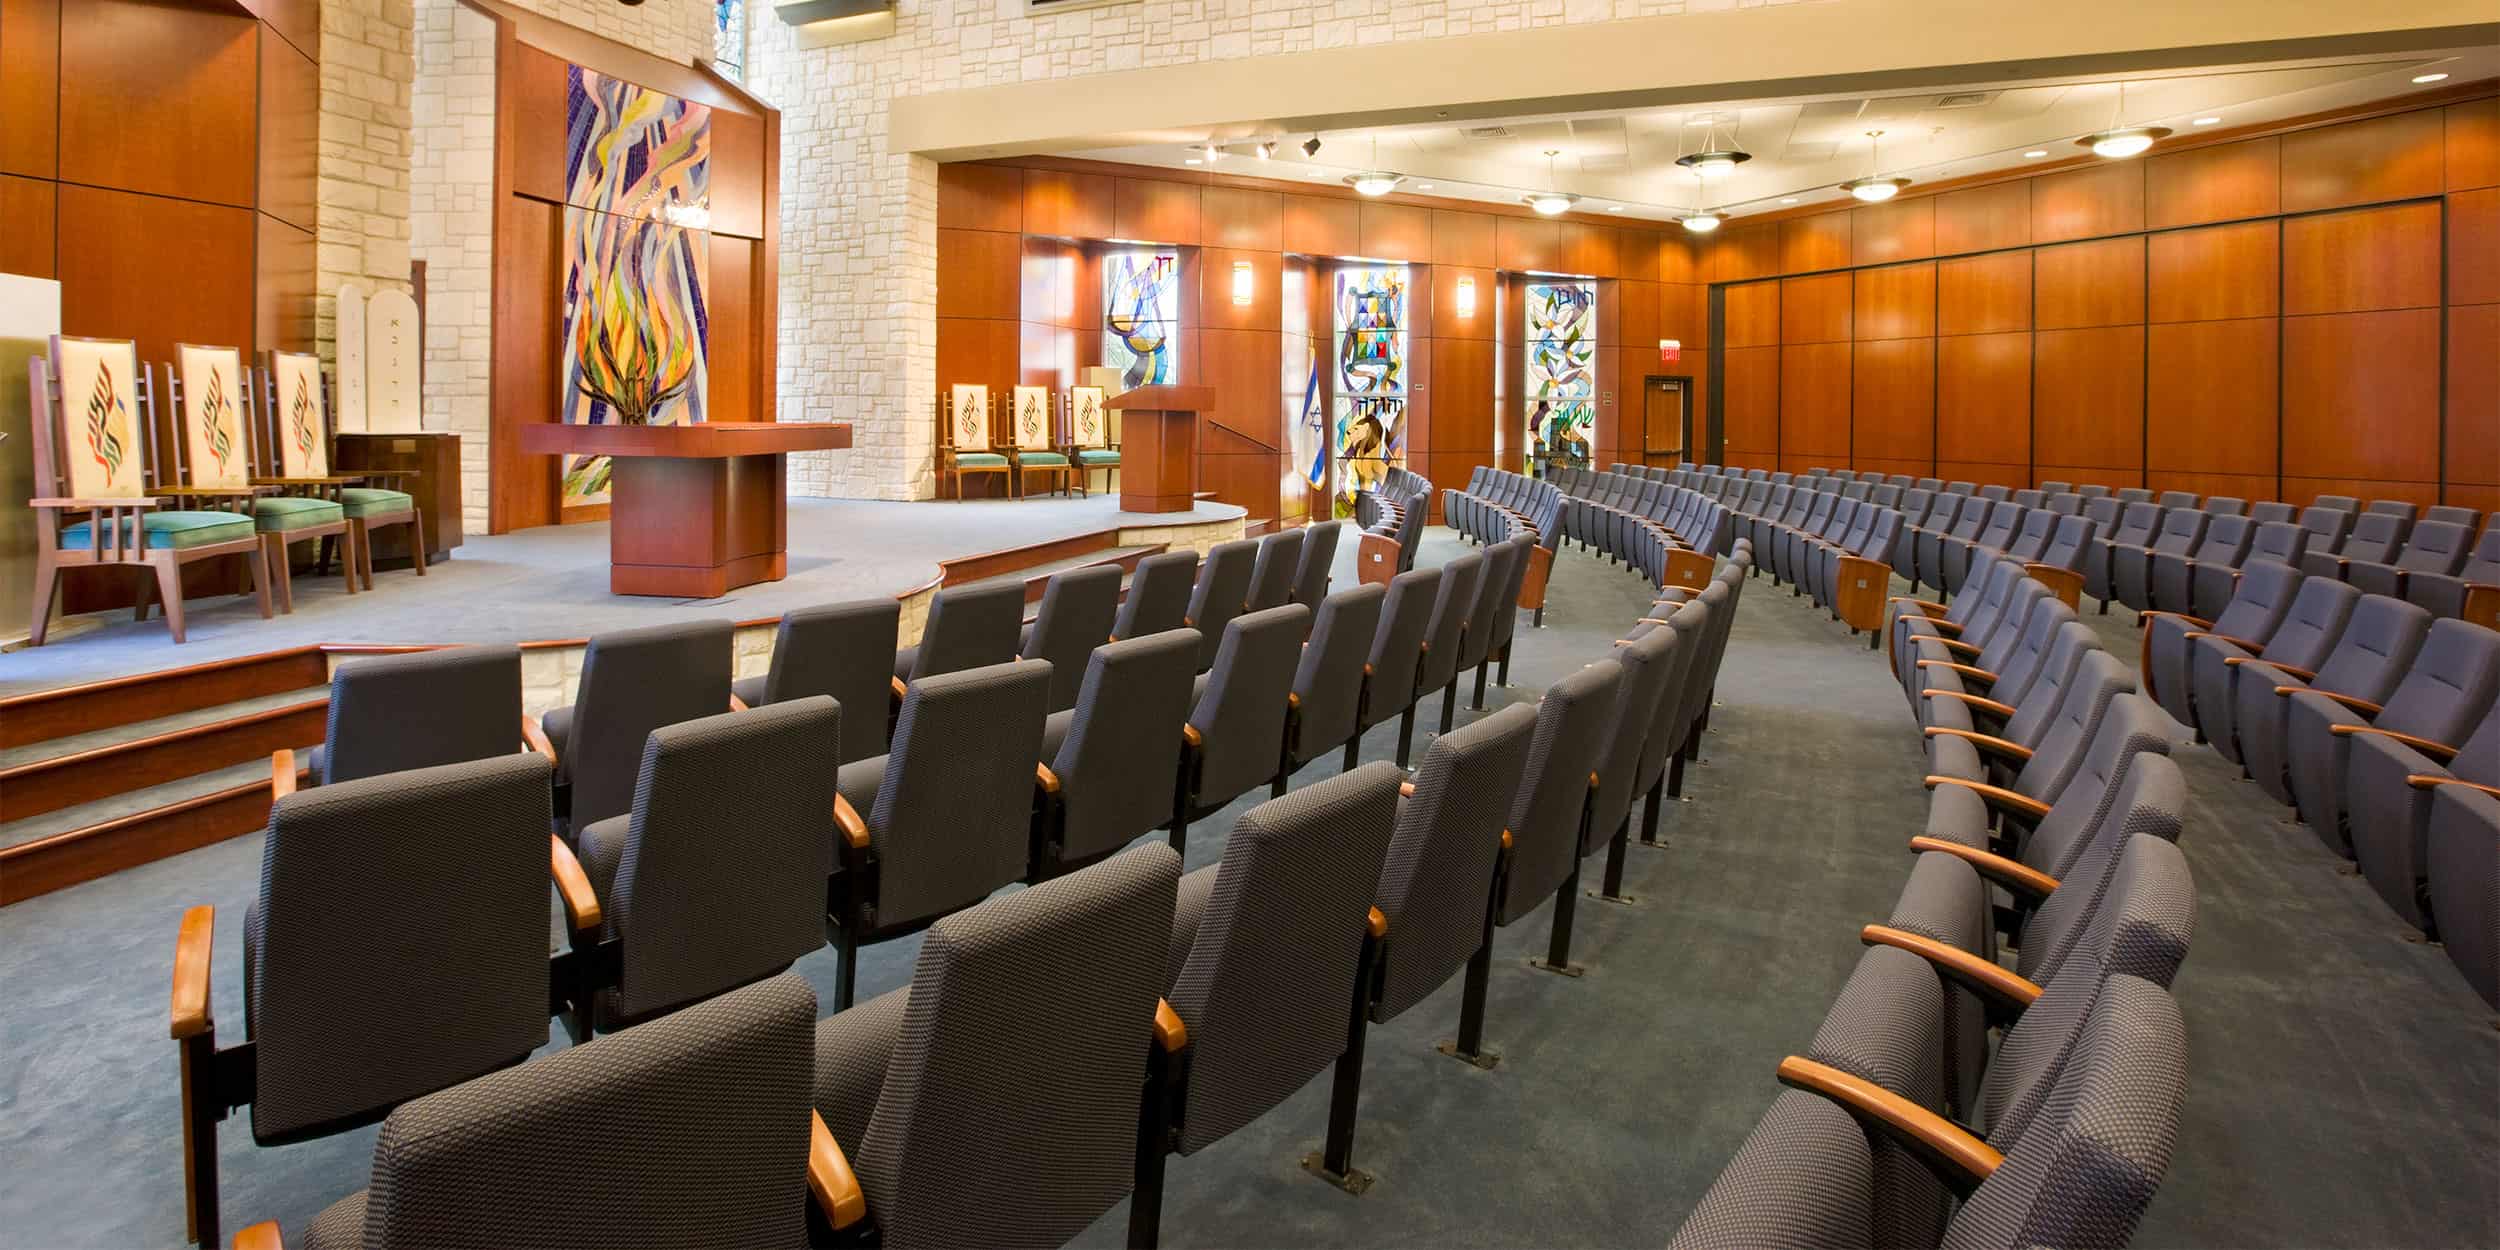 Sauder Synagogue furniture theater seating